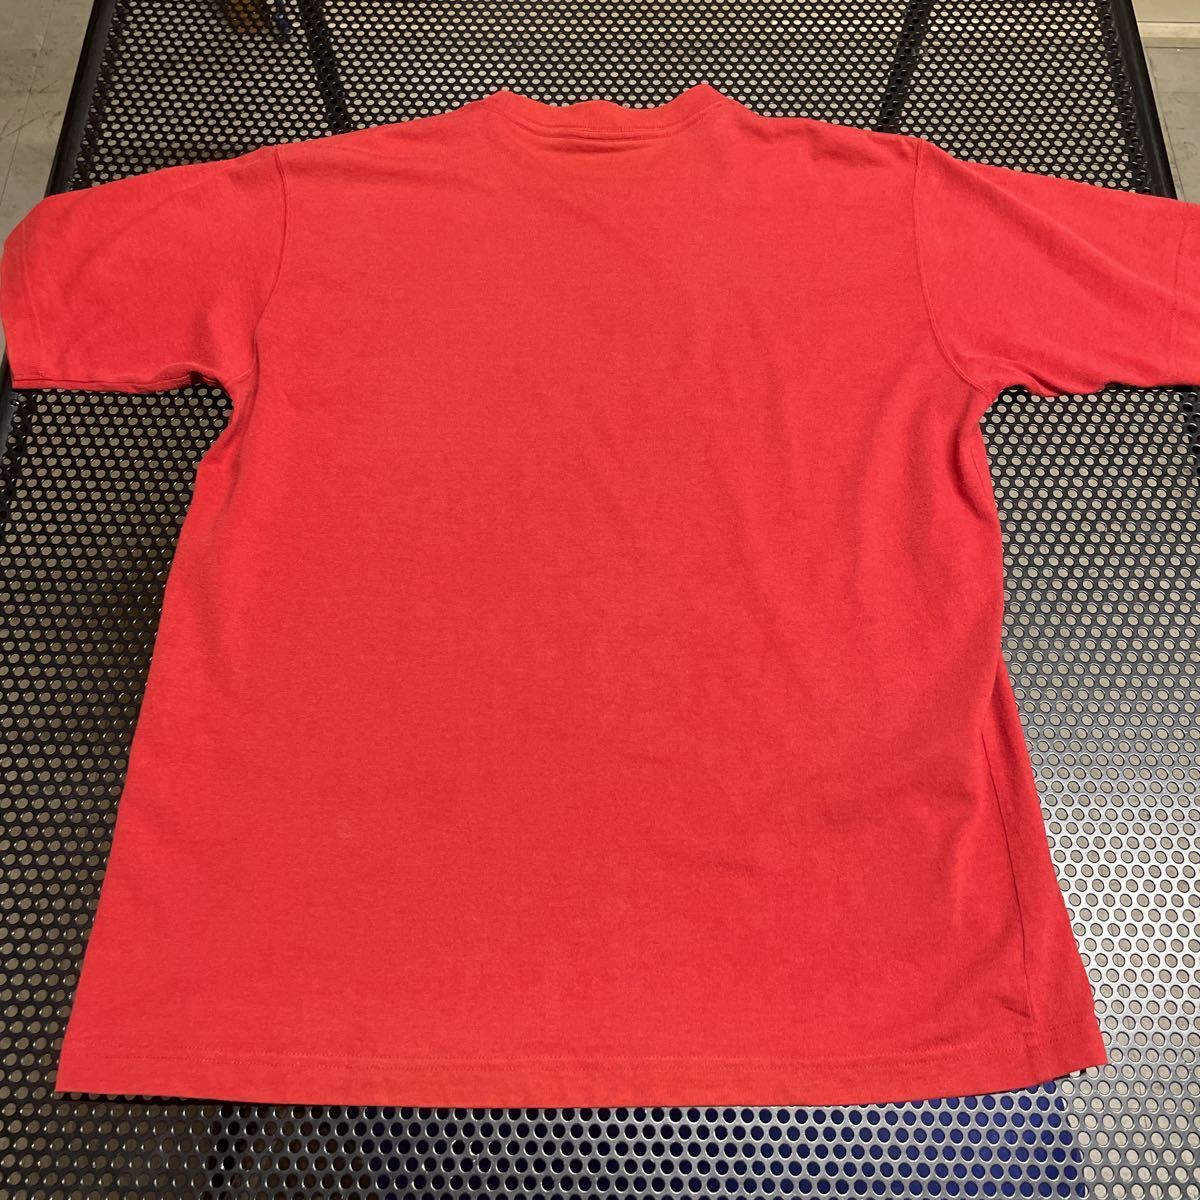 ノースフェイス 半袖 プリントTシャツ エンジ がかった赤 レッド Lサイズ TEK TEE_画像3